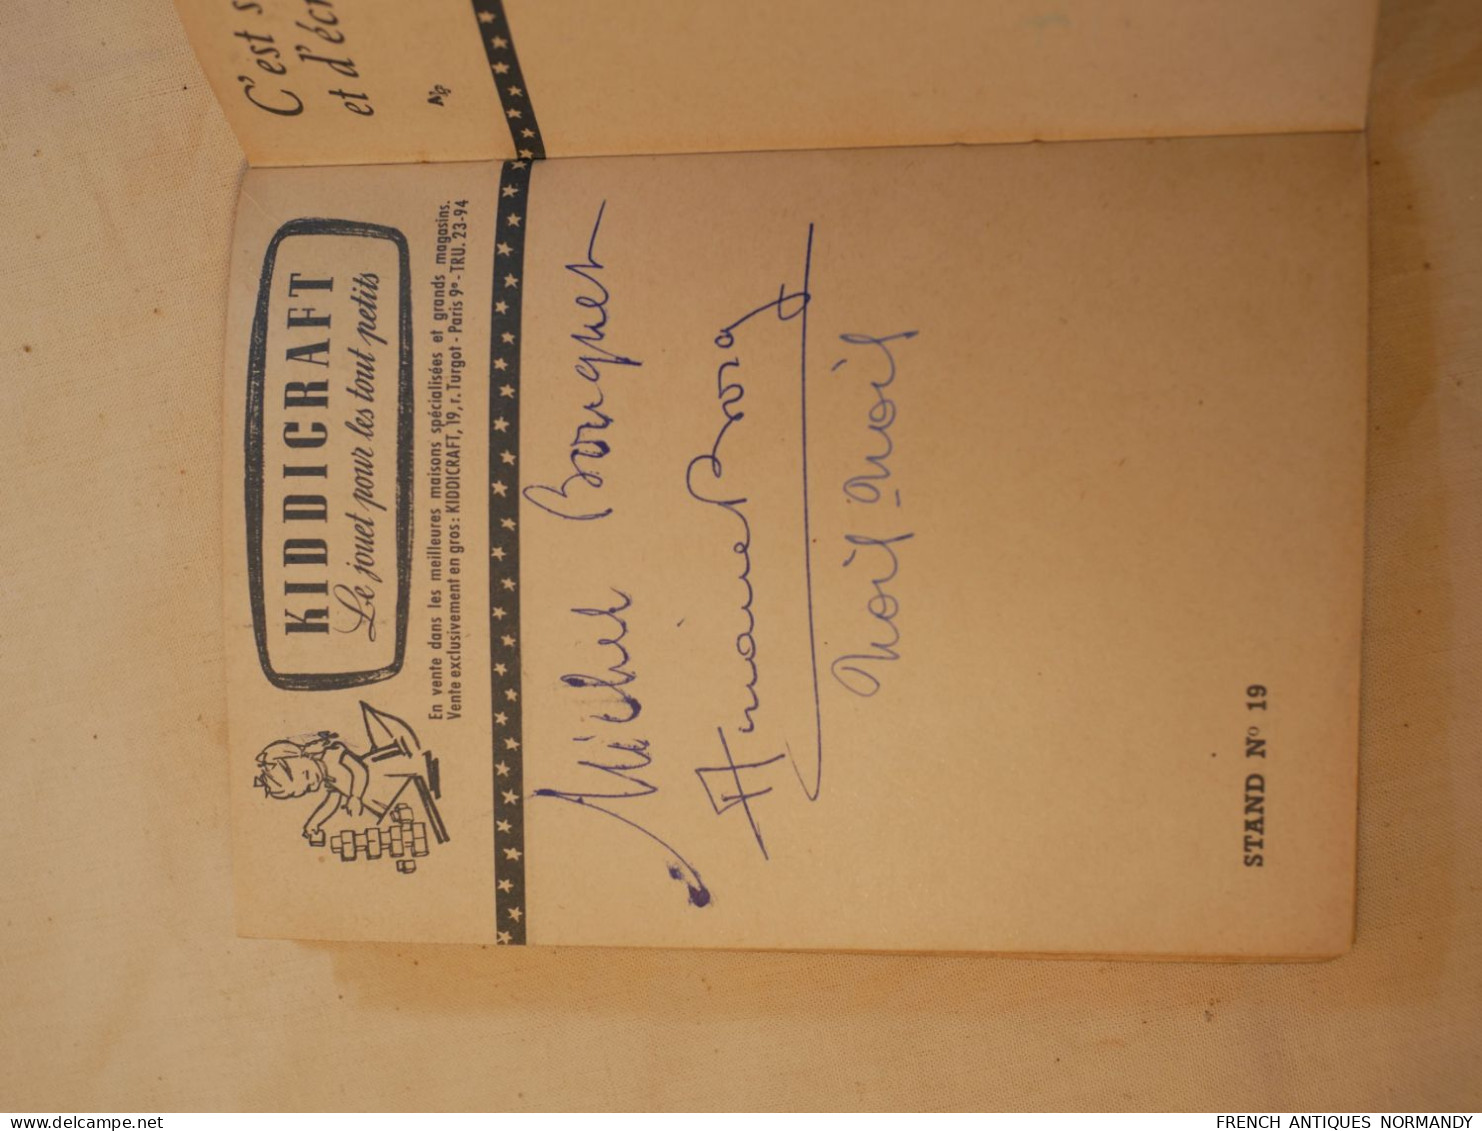 Livret carnet autographes LA KERMESSE AUX ETOILES 1952 signatures de grandes vedettes célébrités au bénéfice 2ième DB